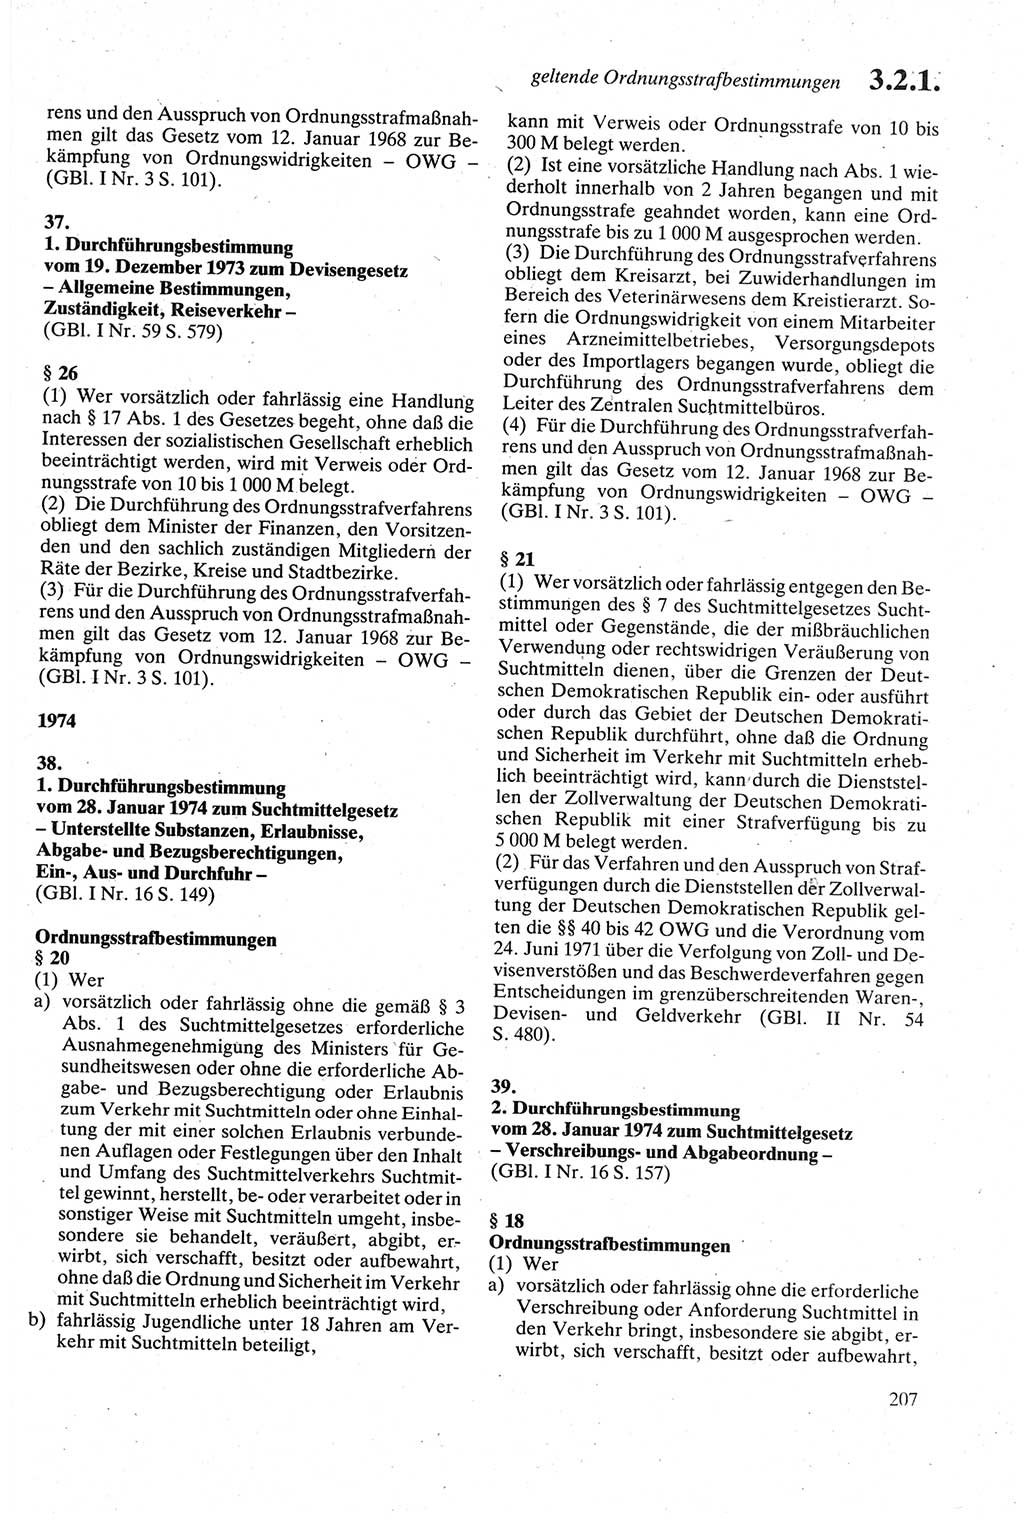 Strafgesetzbuch (StGB) der Deutschen Demokratischen Republik (DDR) sowie angrenzende Gesetze und Bestimmungen 1979, Seite 207 (StGB DDR Ges. Best. 1979, S. 207)